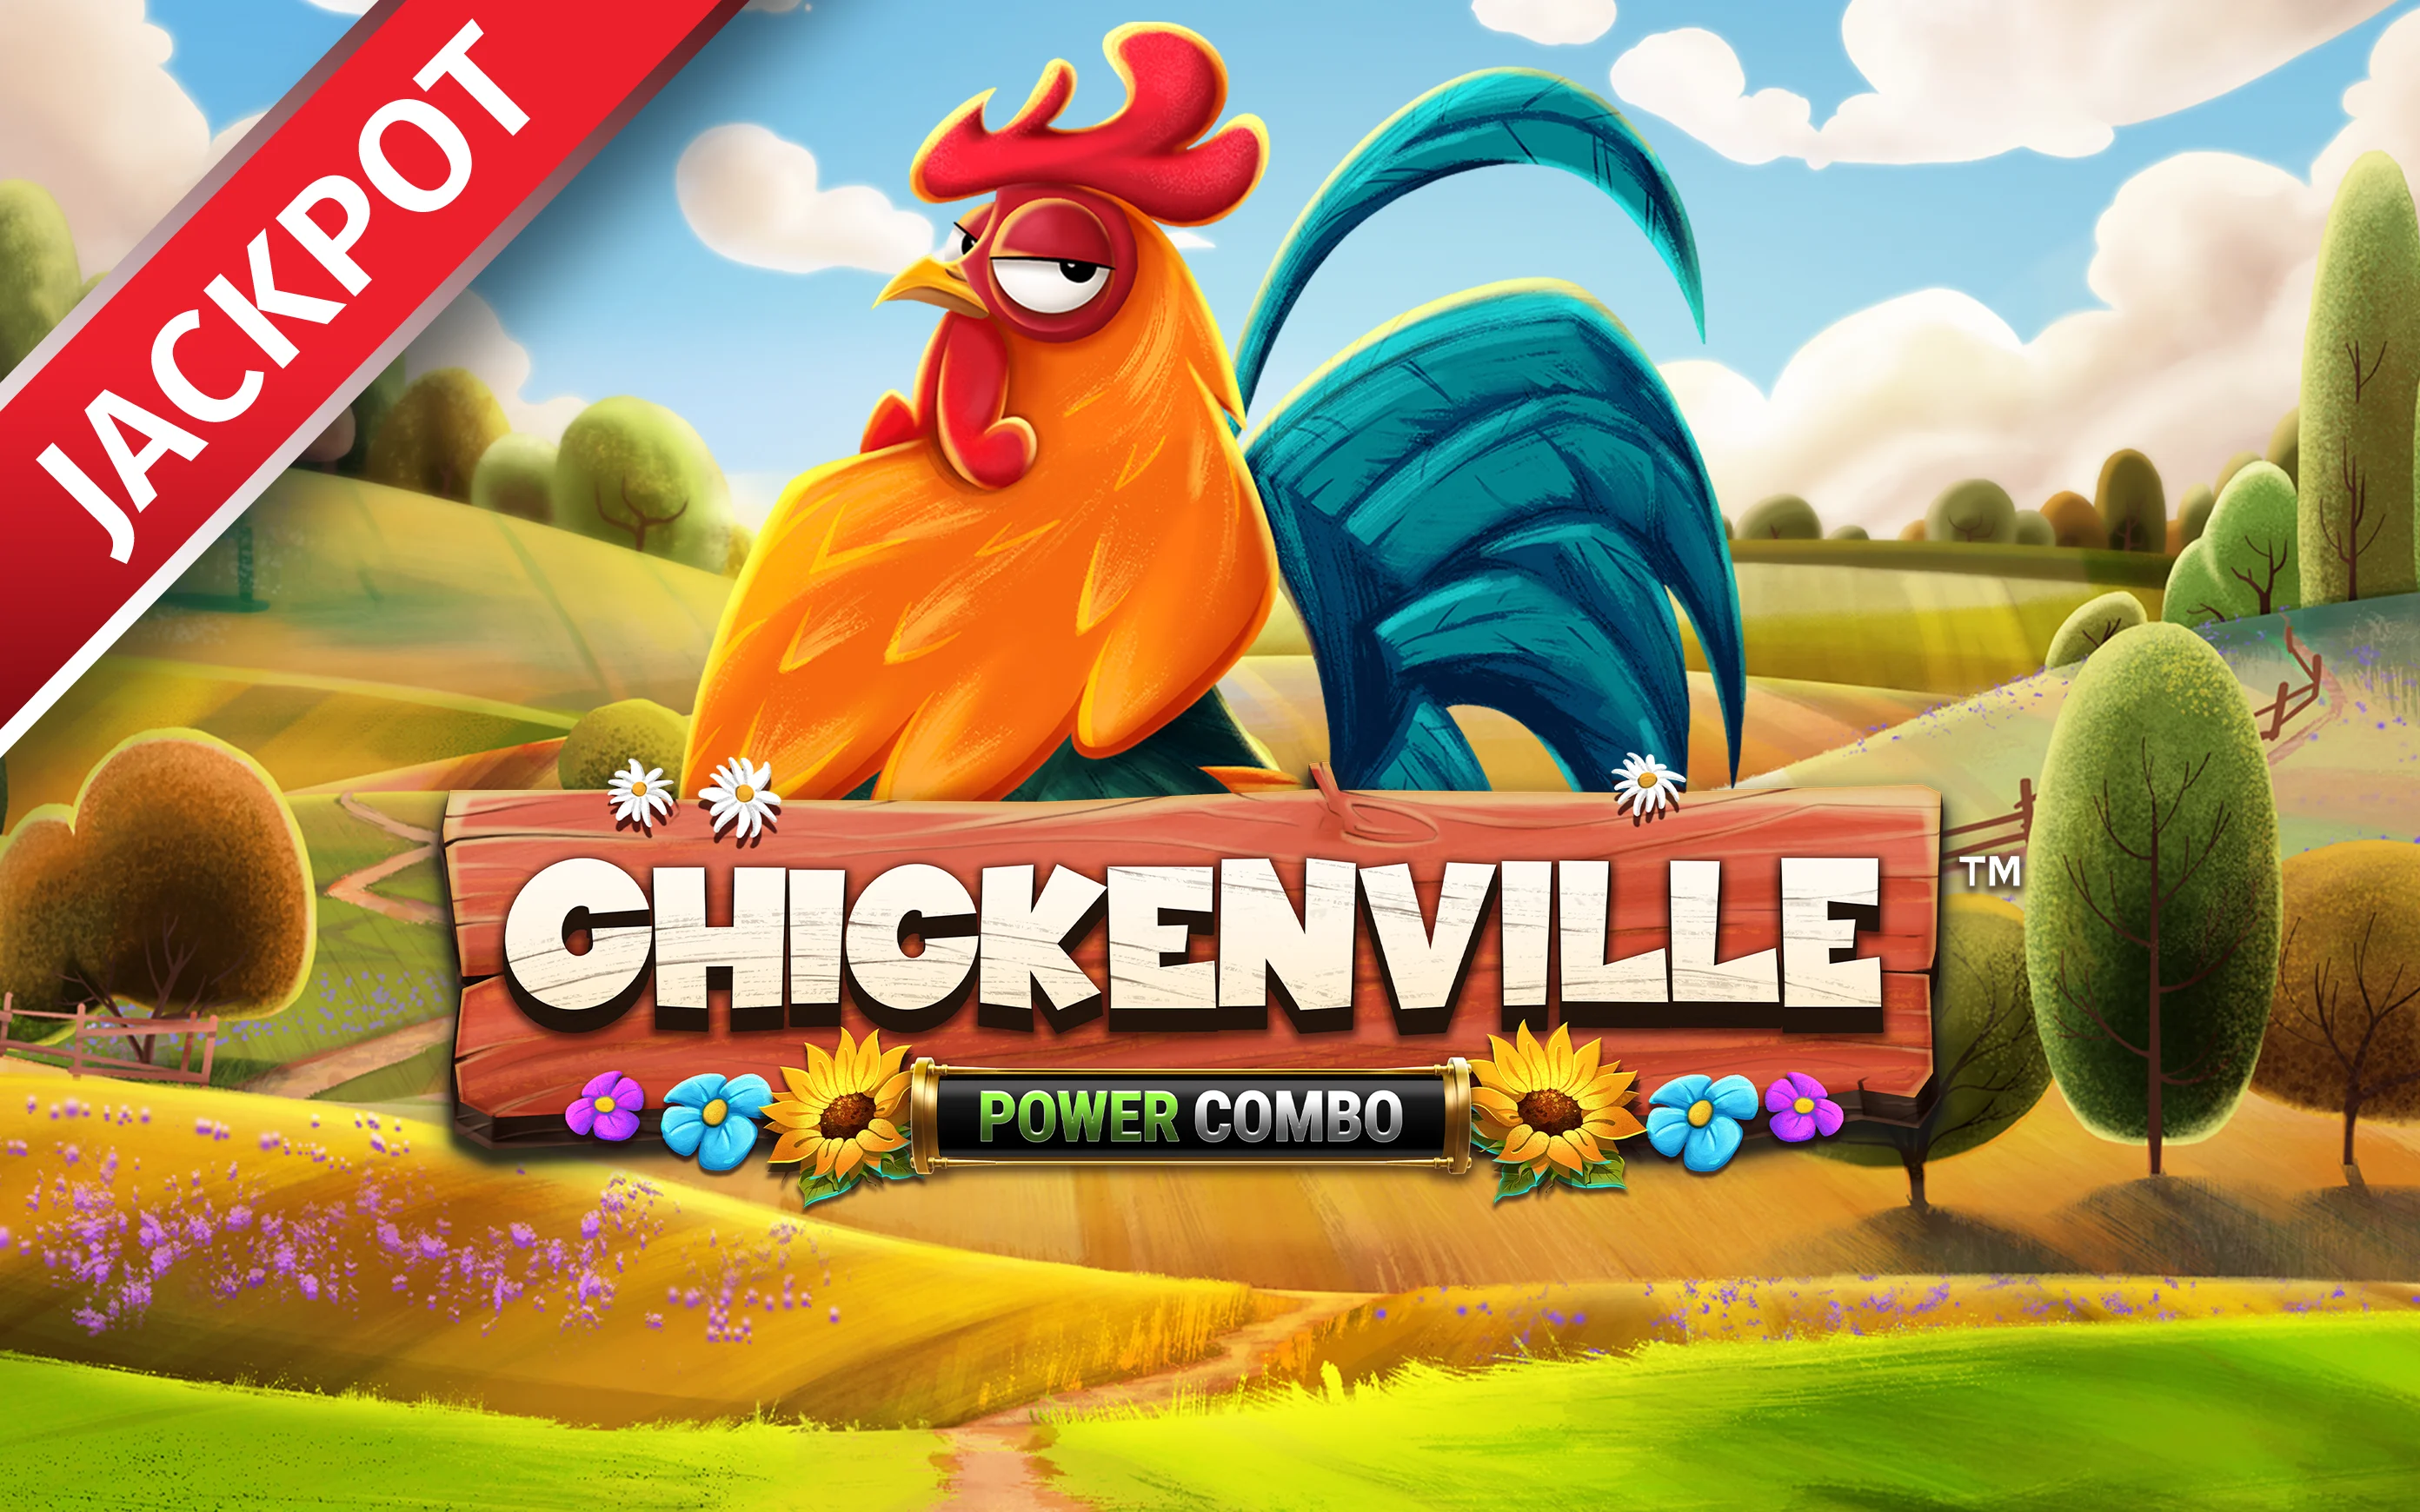 Zagraj w Chickenville POWER COMBO™ w kasynie online Starcasino.be